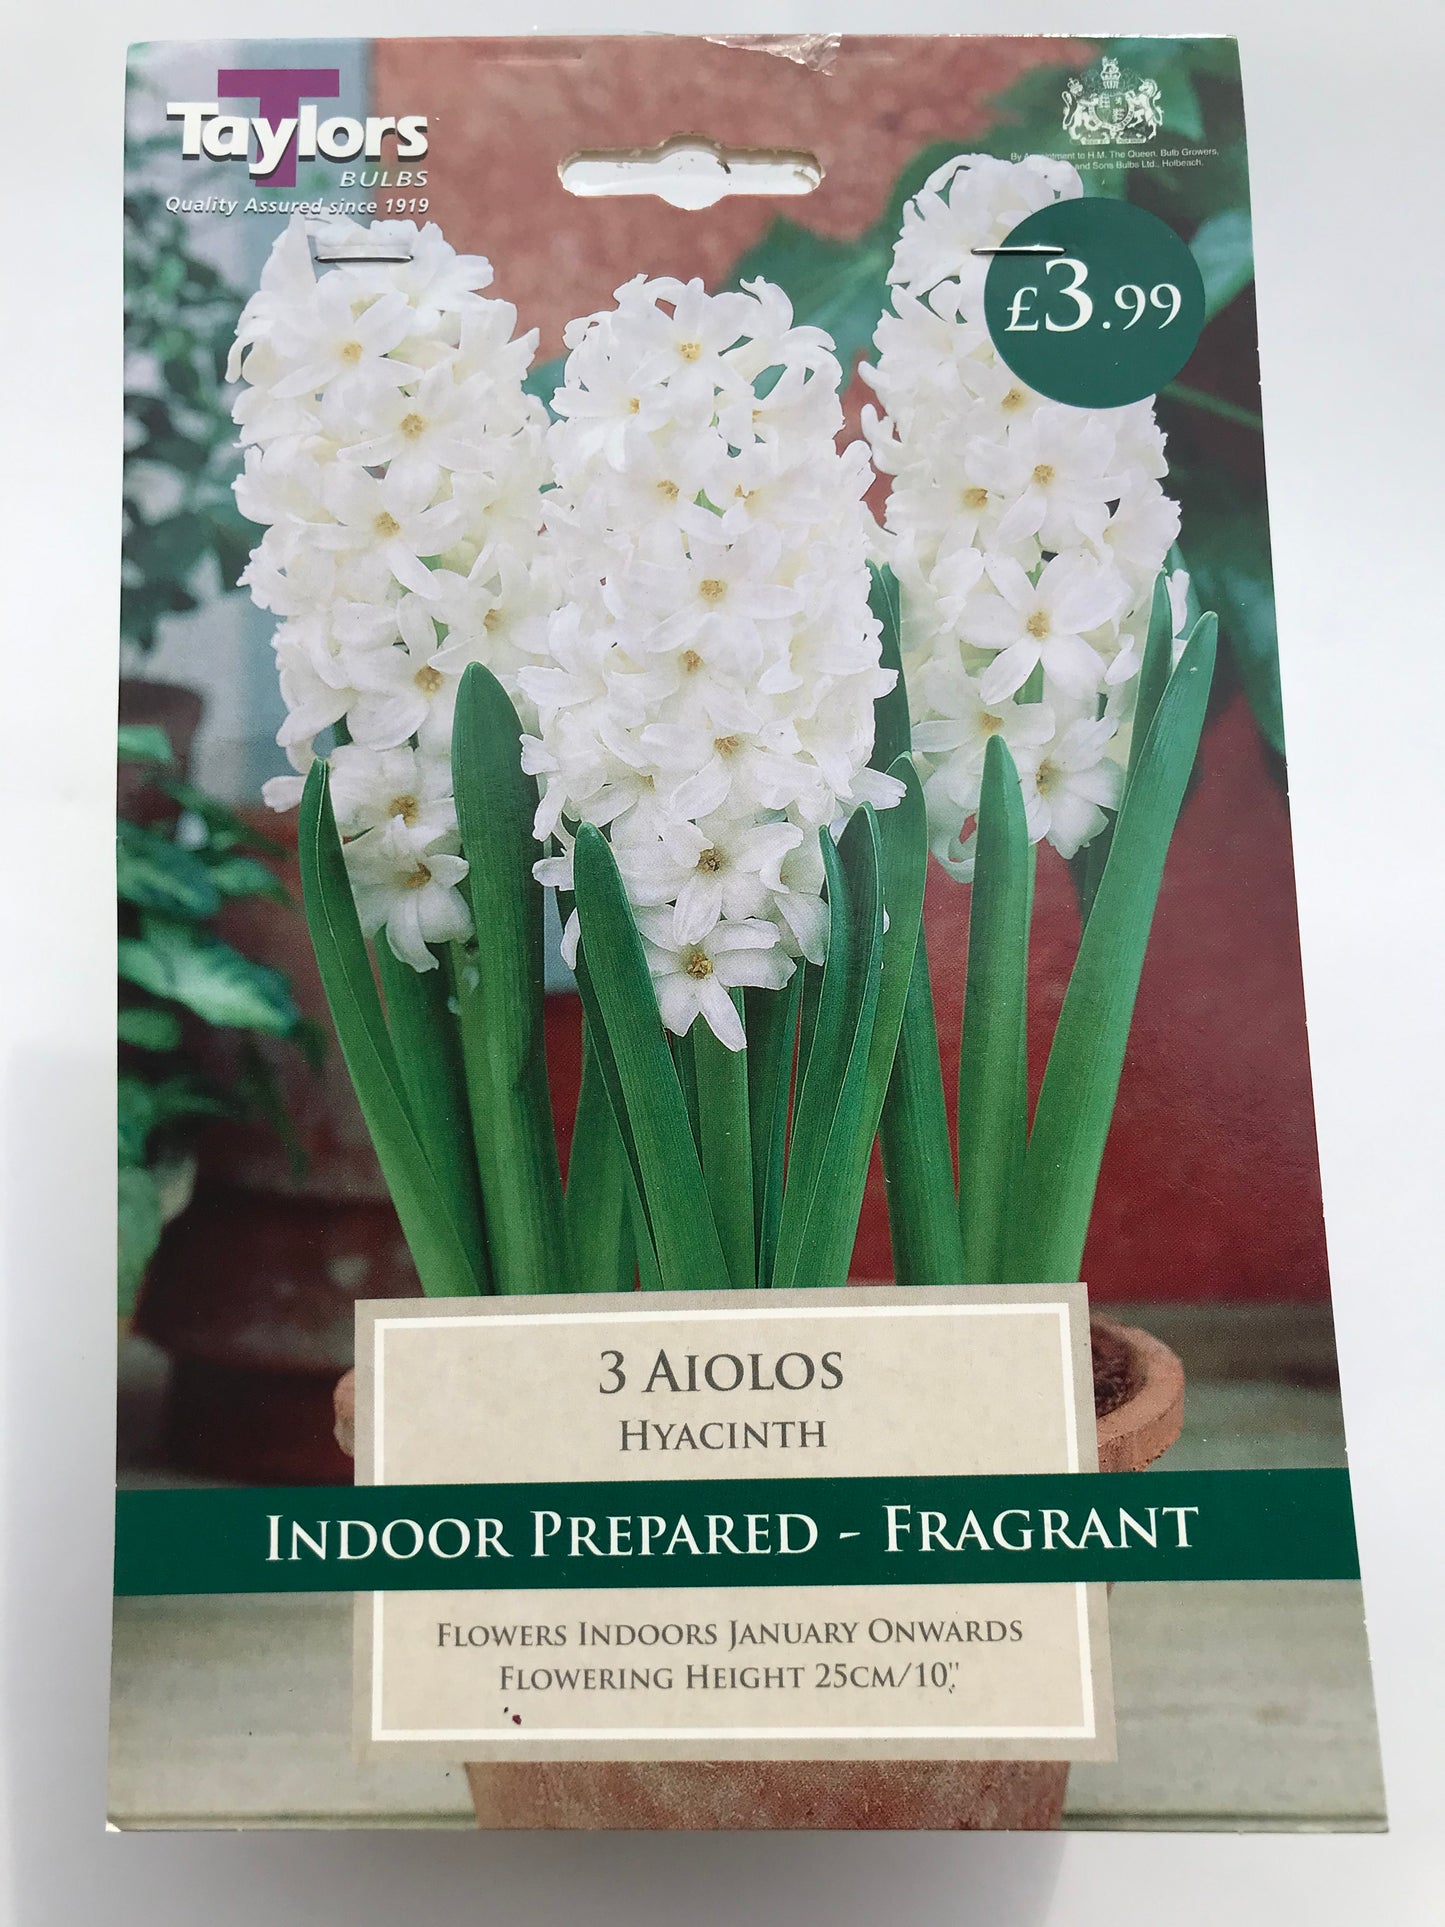 Taylors - Hyacinth Aiolos - White - 3 Prepared Bulbs